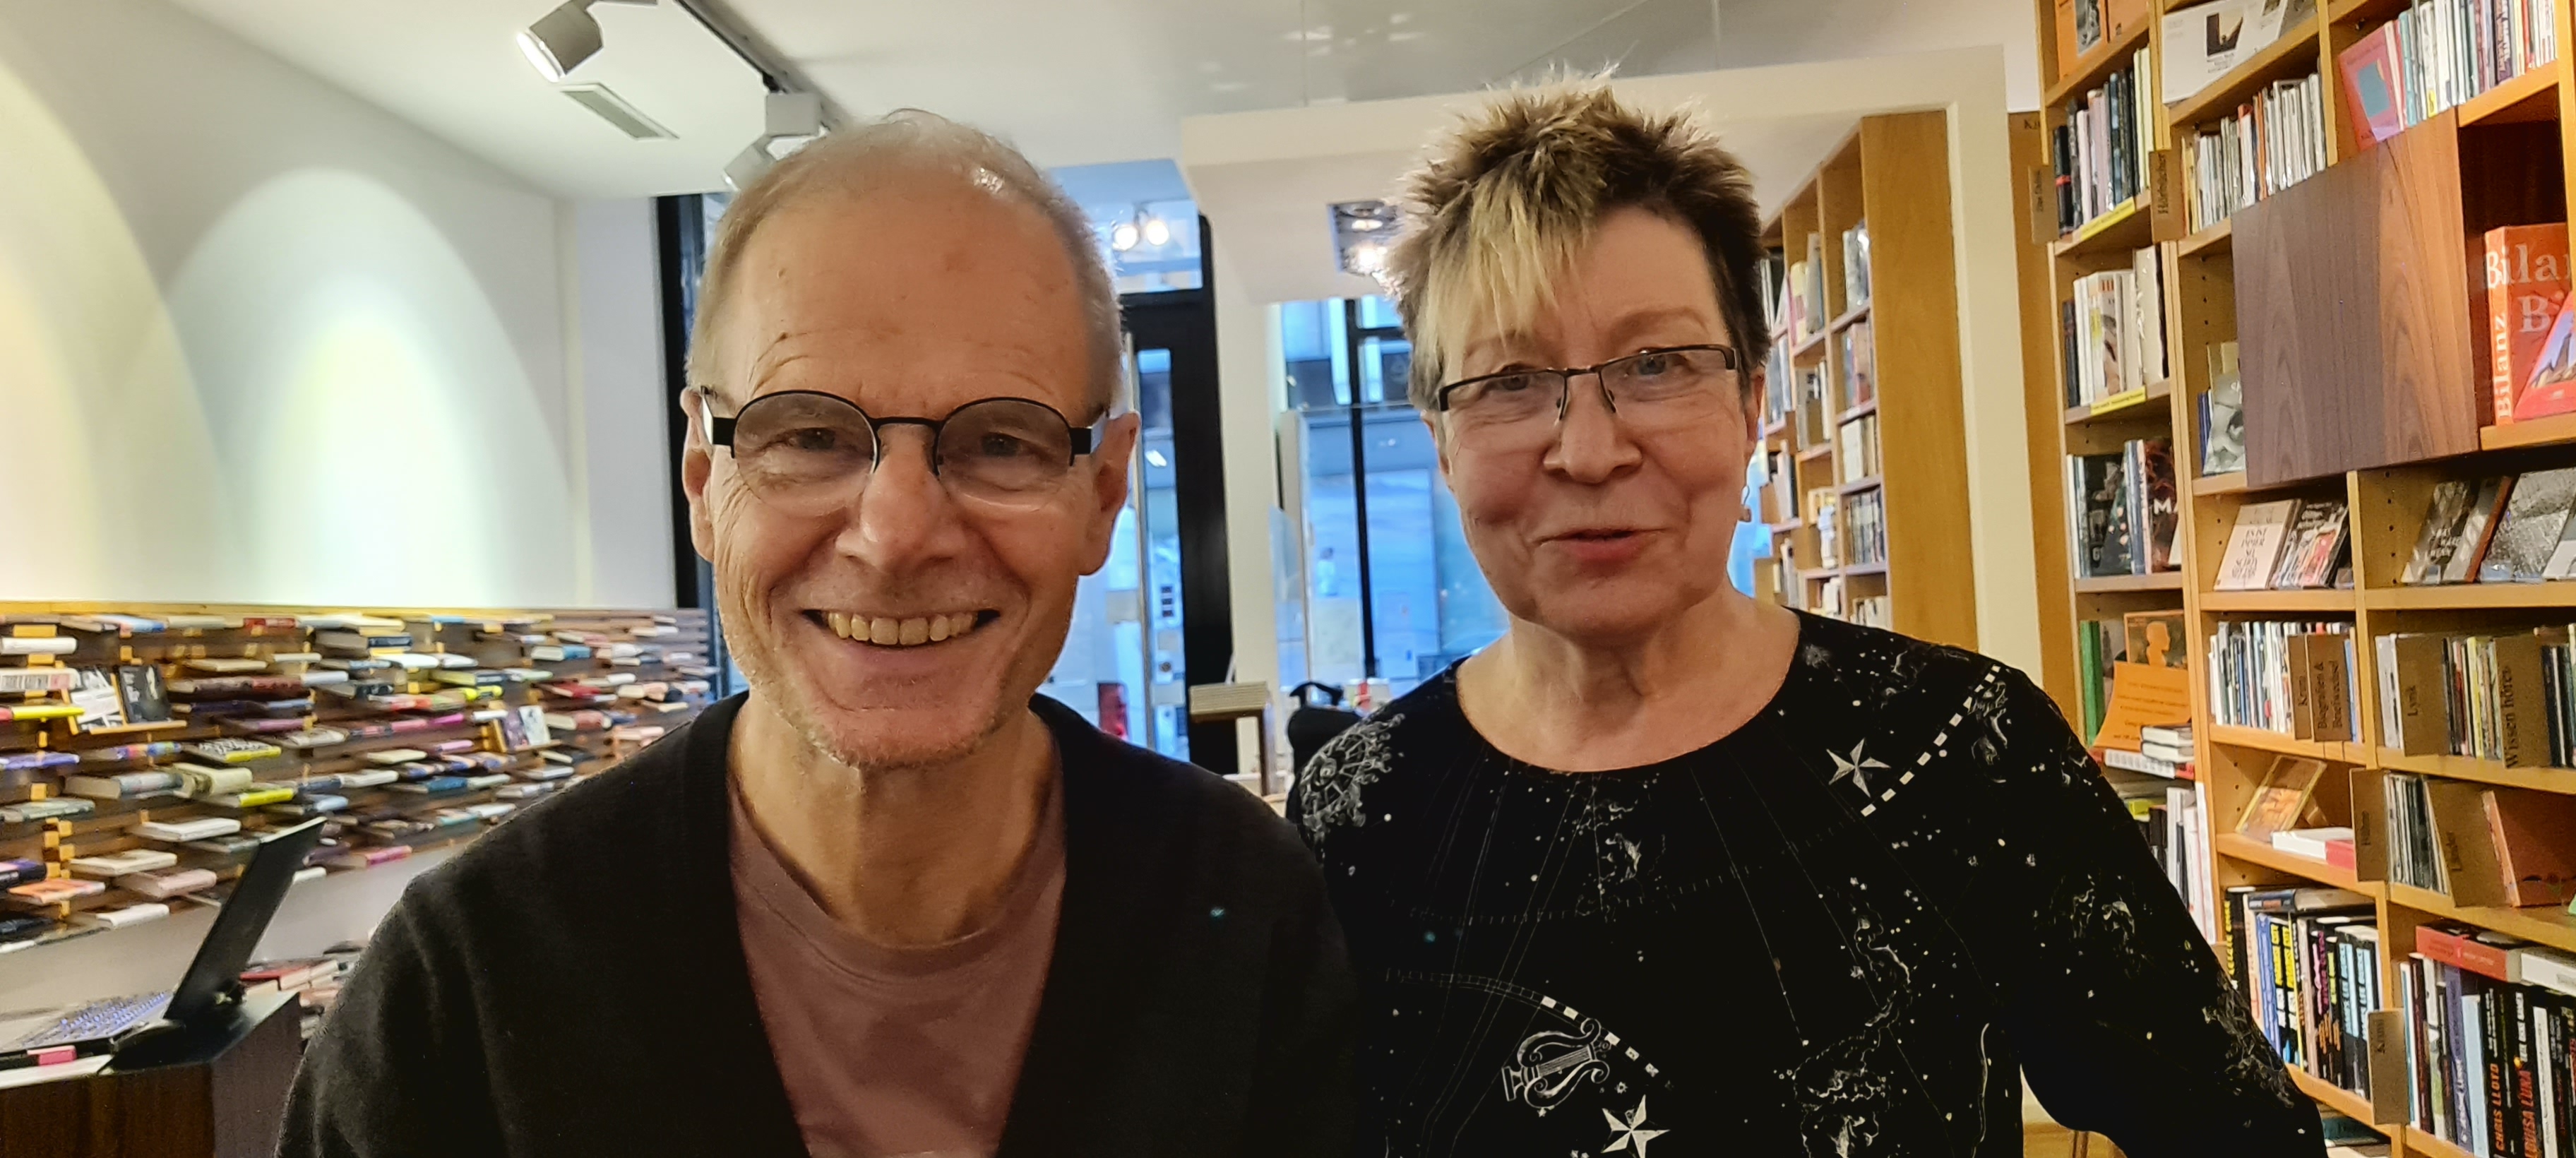 Peter Kolling und Beate Scherzer, ausgezeichnet mit dem Ehrenpreis des Literaturpreises Ruhr 2021.